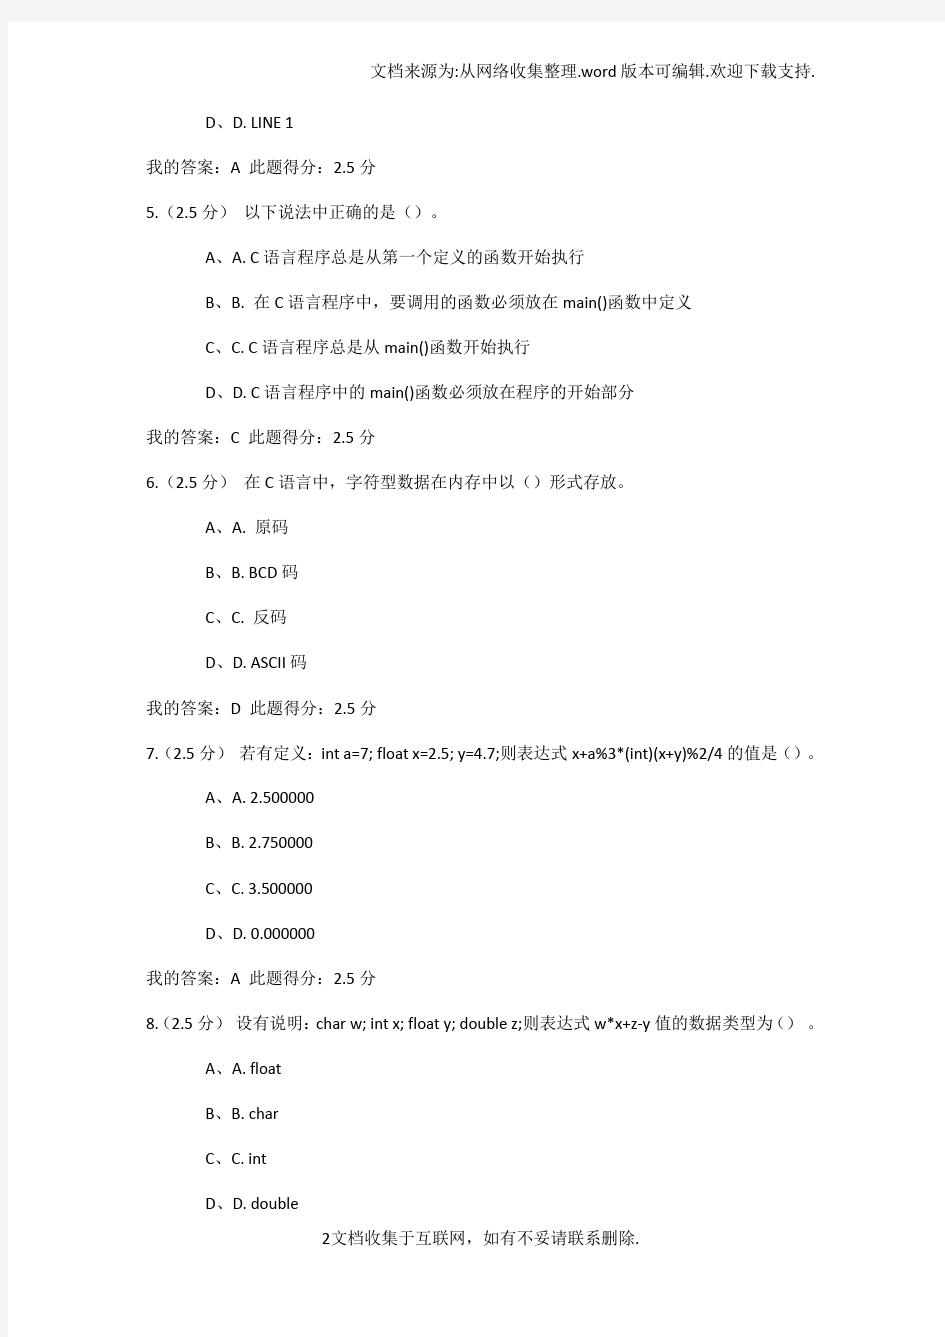 中国石油大学C语言程序设计第一册在线作业答案